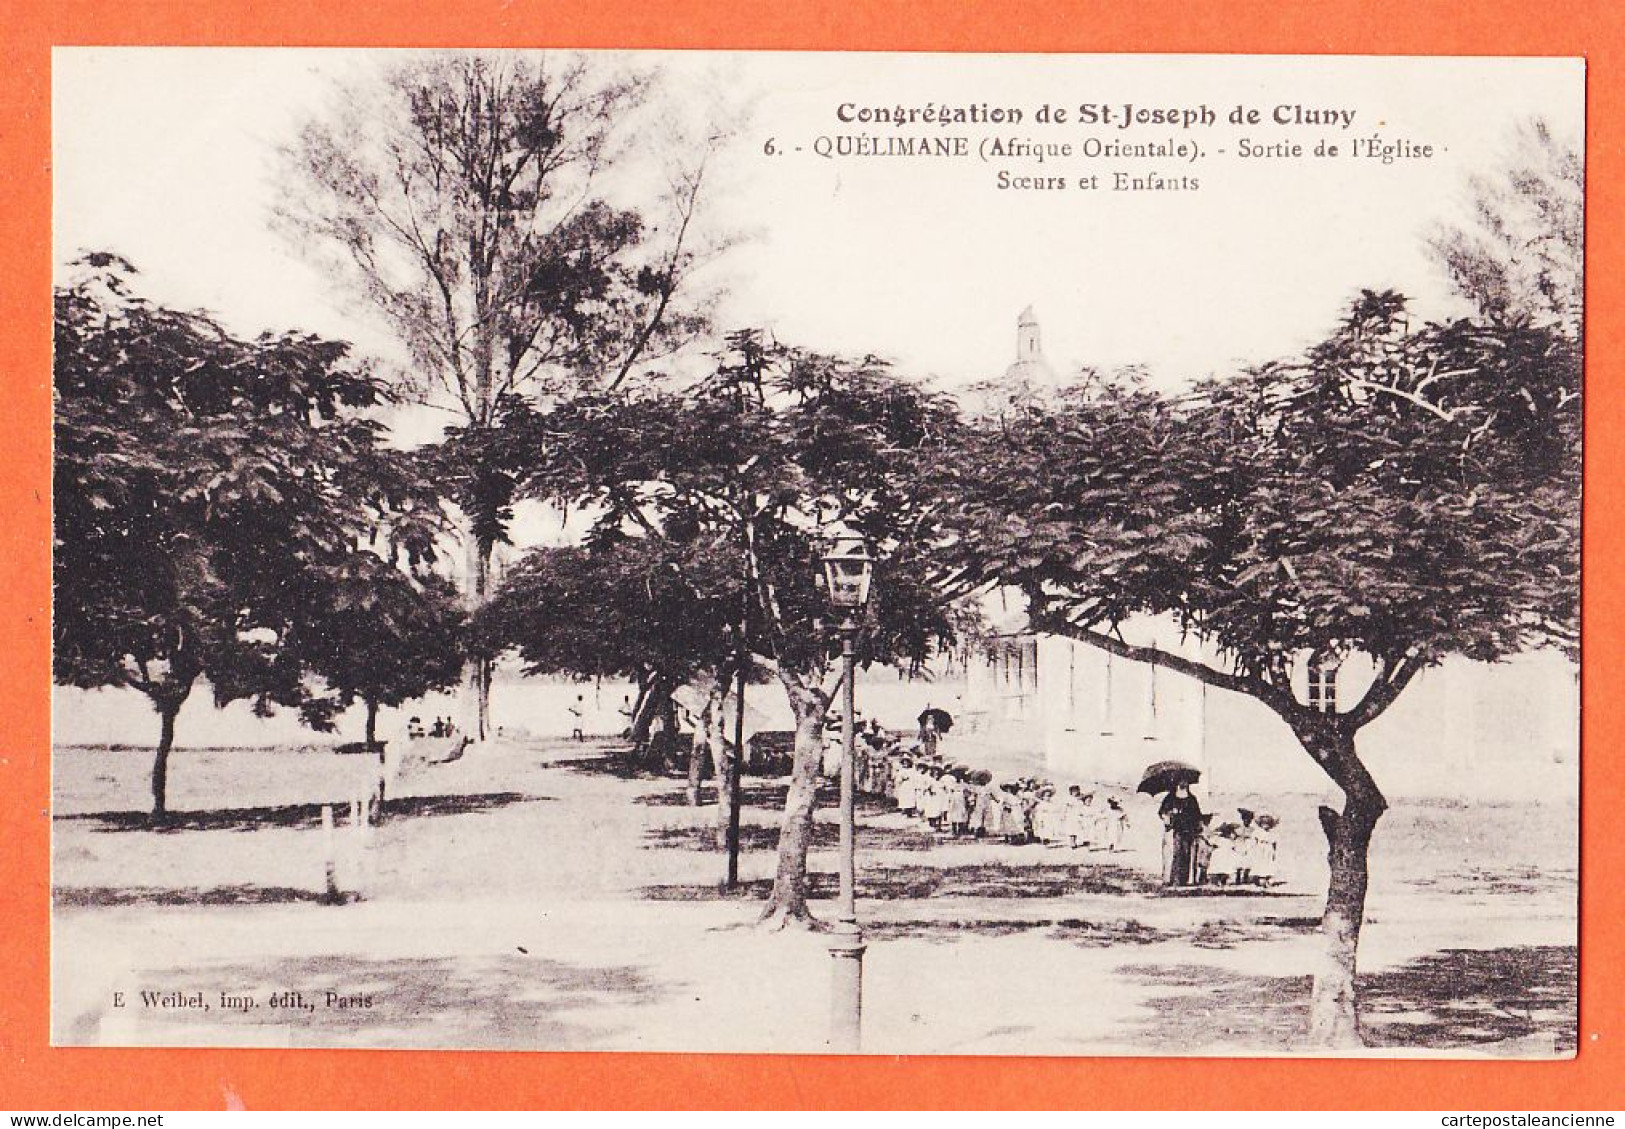 08010 ● QUELIMANE Mozambique Sortie Eglise Soeurs Congrégation SAINT-JOSEPH CLUNY 1925- WEIBEL 6 St - Mozambique